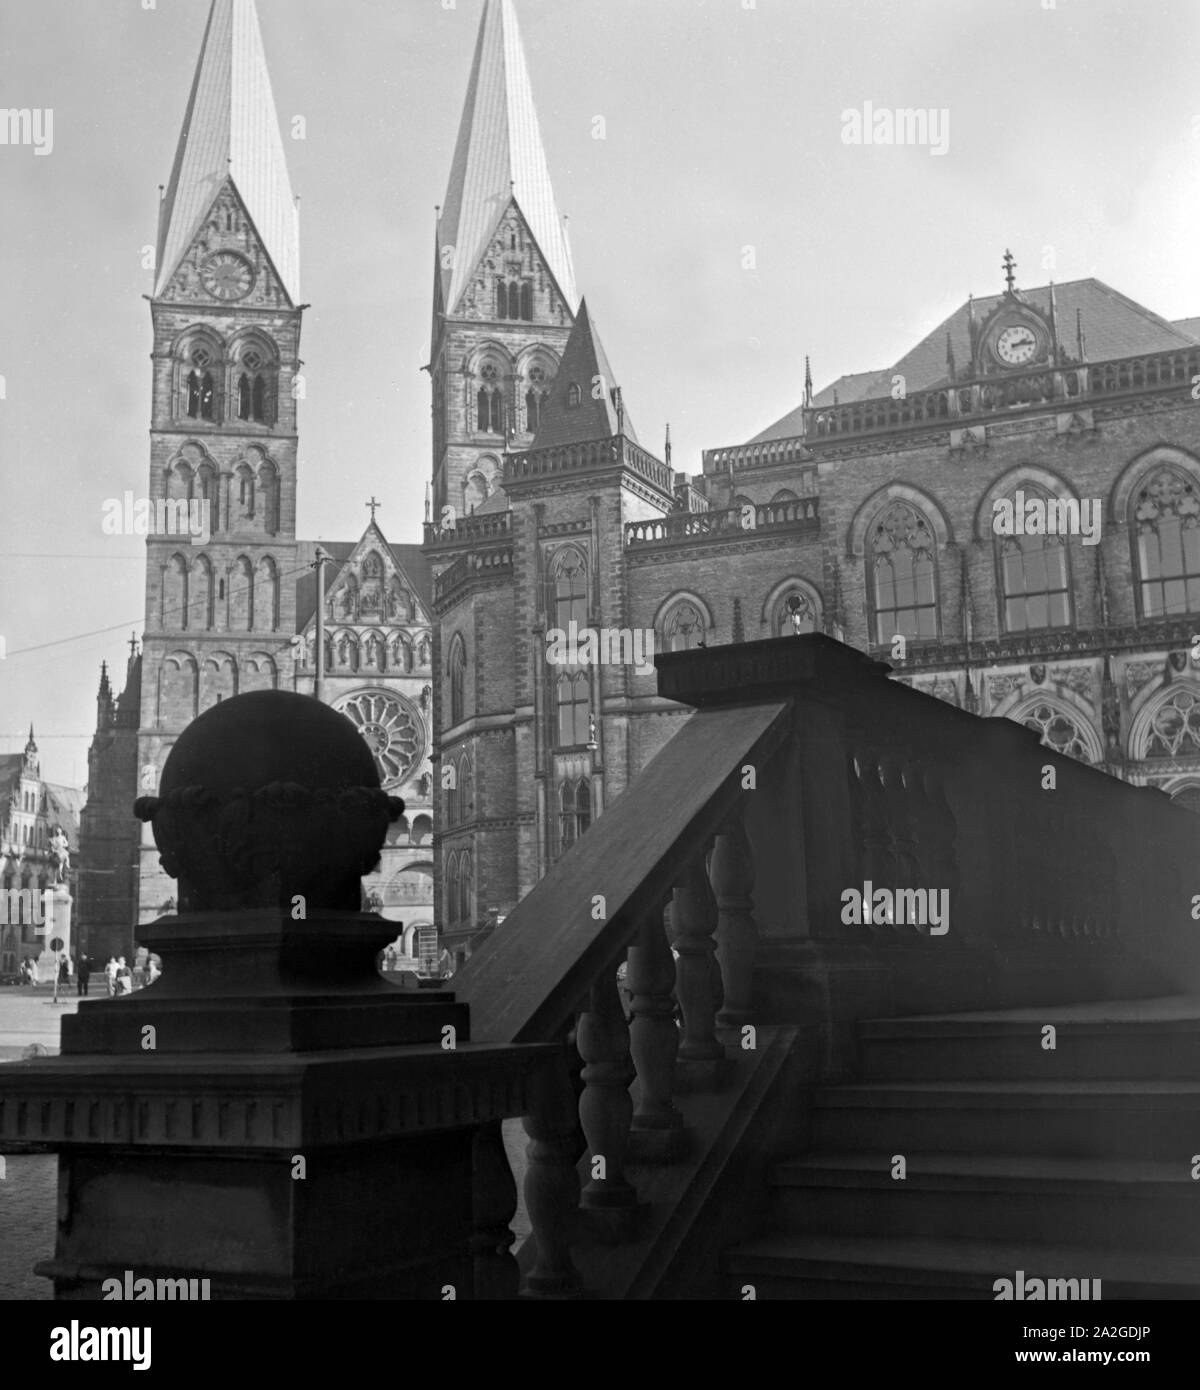 Frontalansicht vom St. Petri Dom di Brema, Deutschland 1930er Jahre. Lato anteriore della Basilica di San Pietro a Bremen, Germania 1930s. Foto Stock